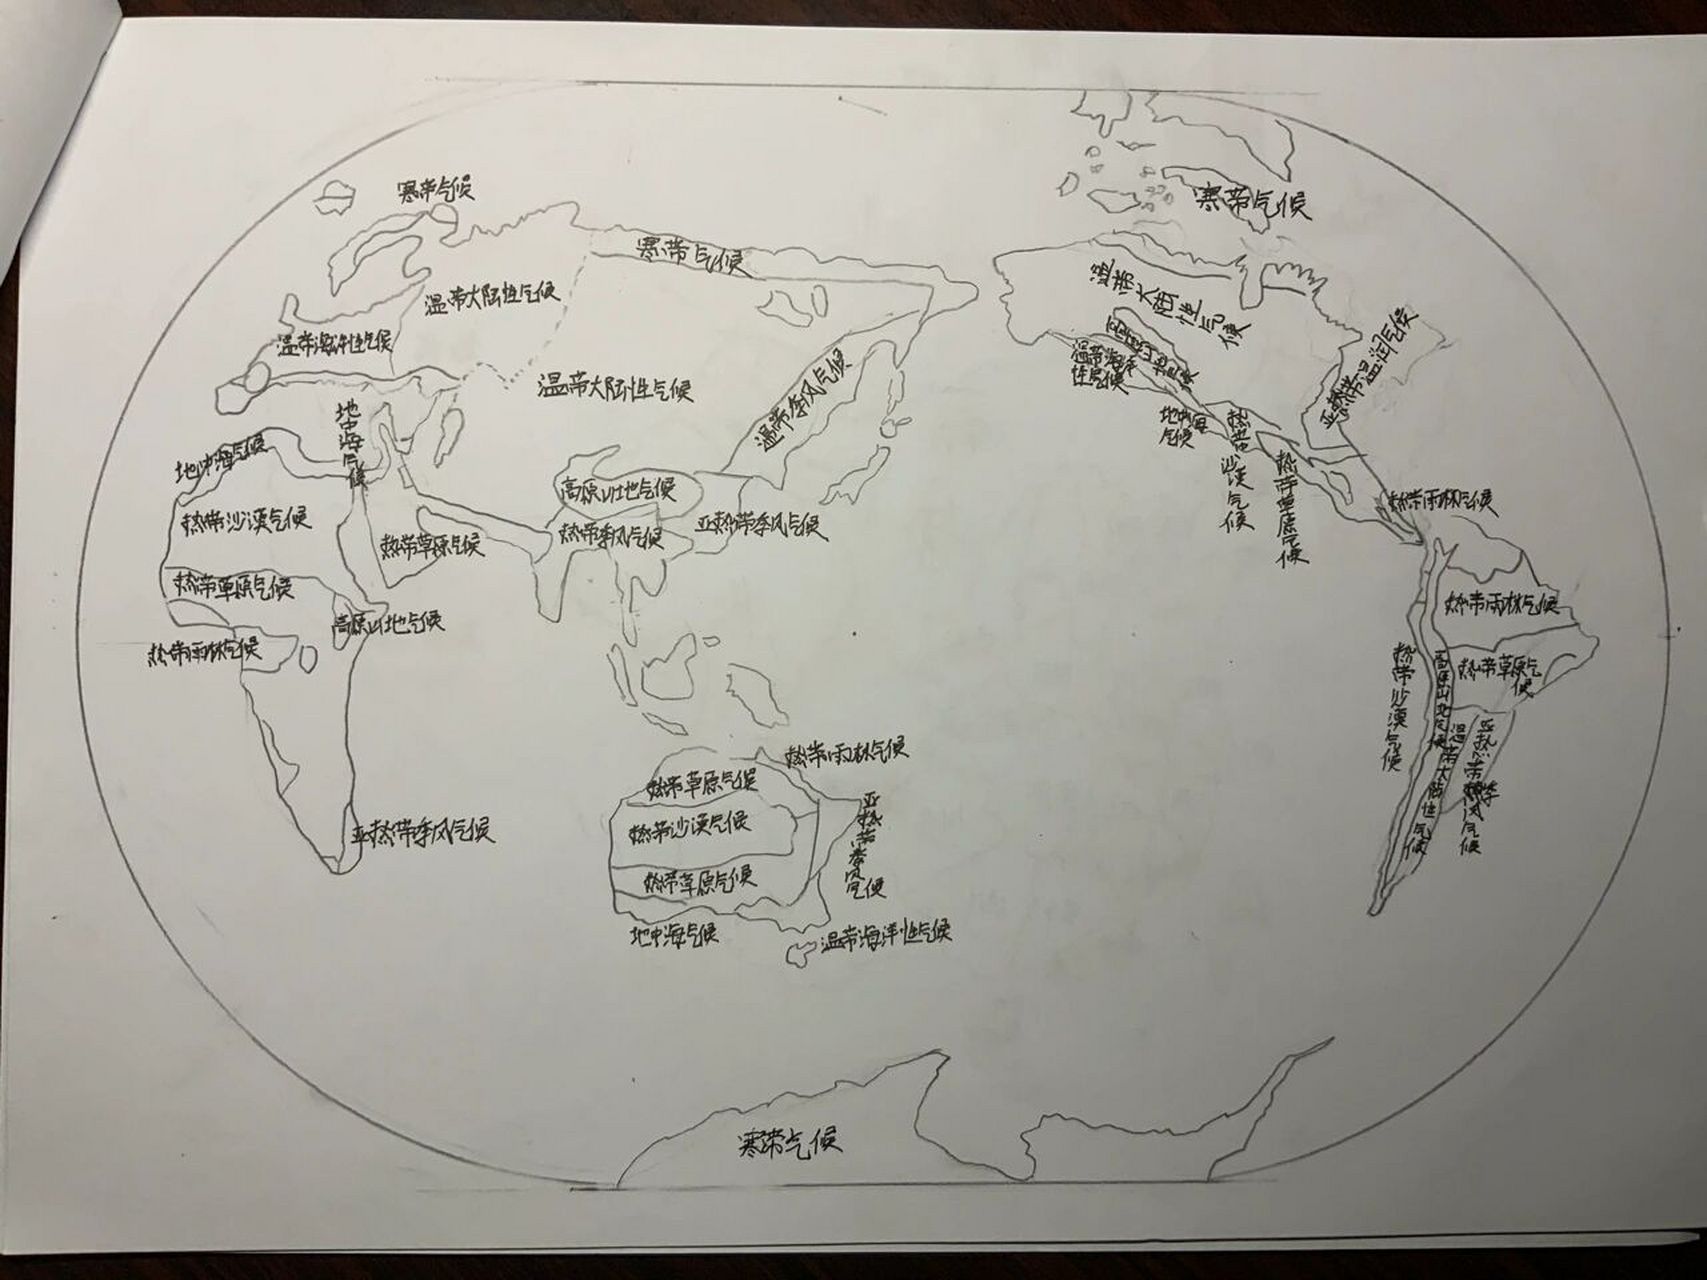 手绘世界地形简图图片